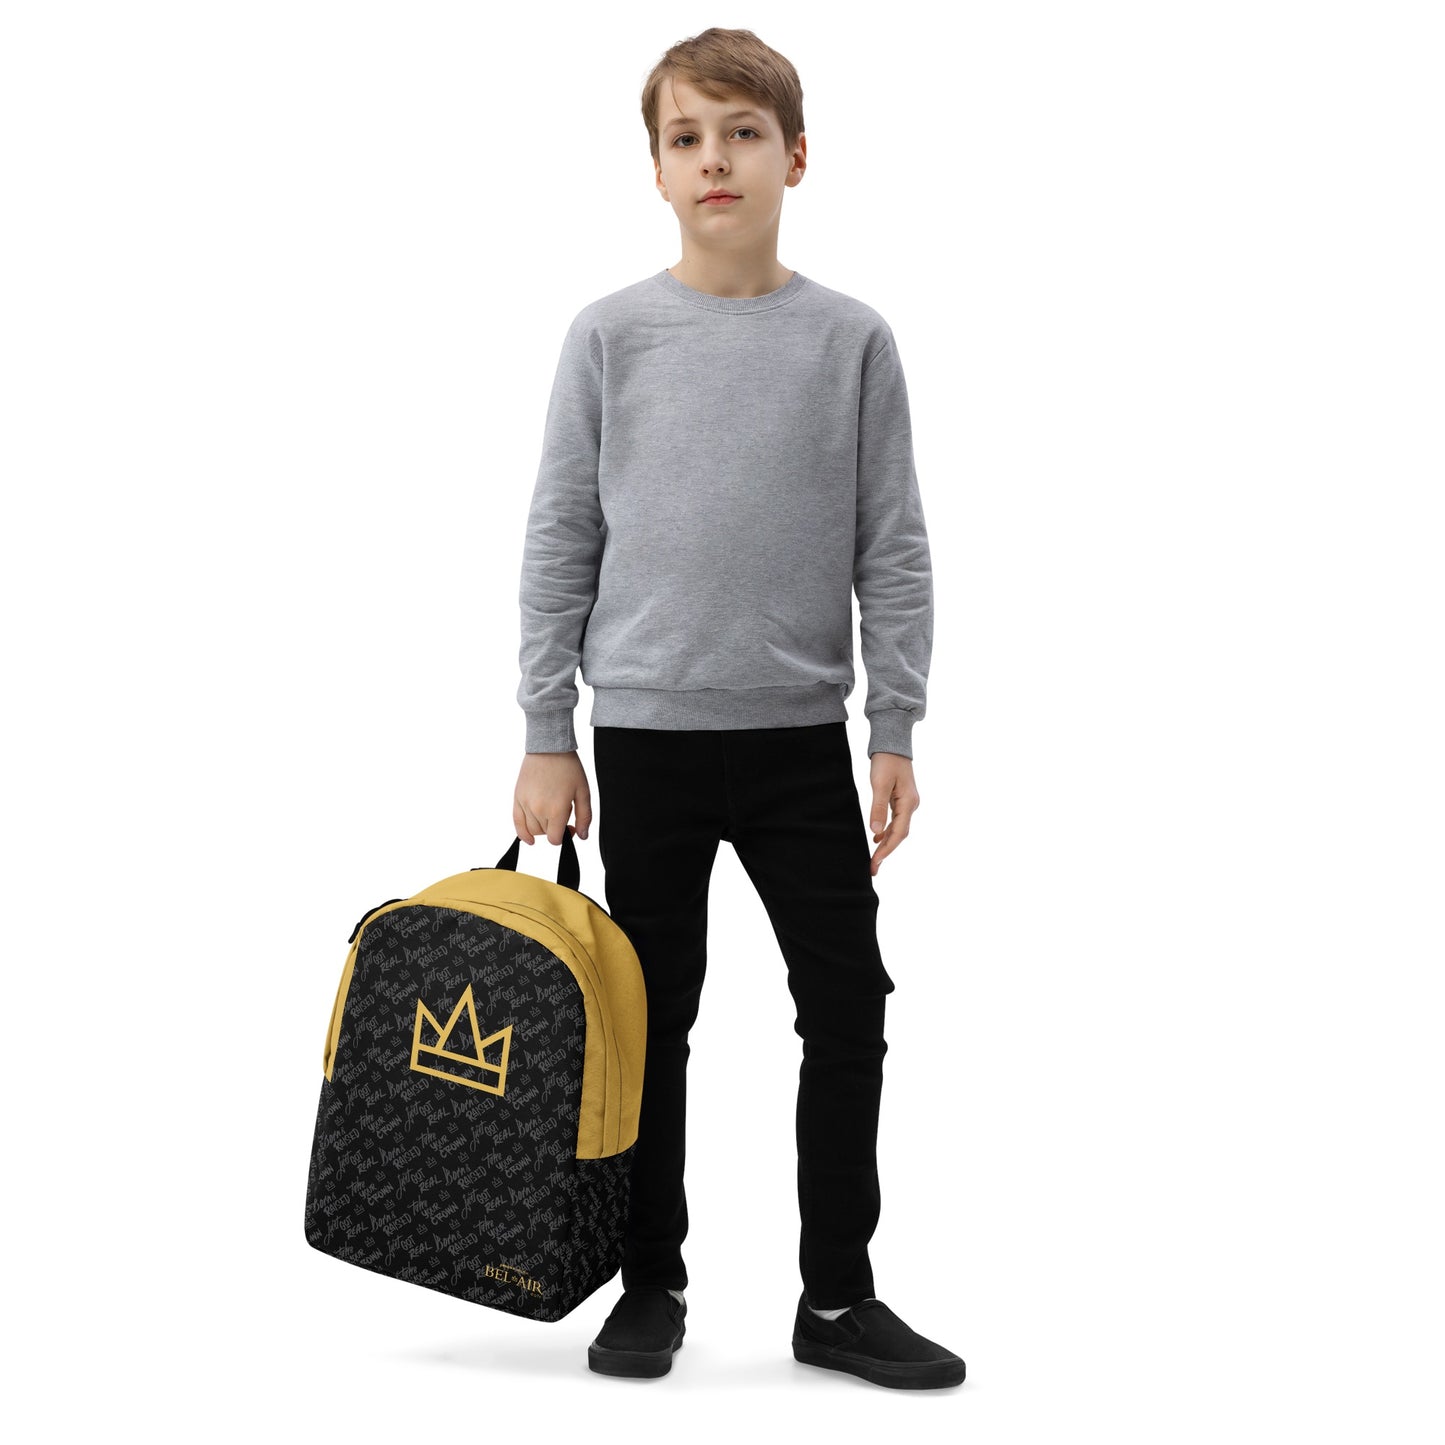 Bel-Air Crown & Pattern Backpack